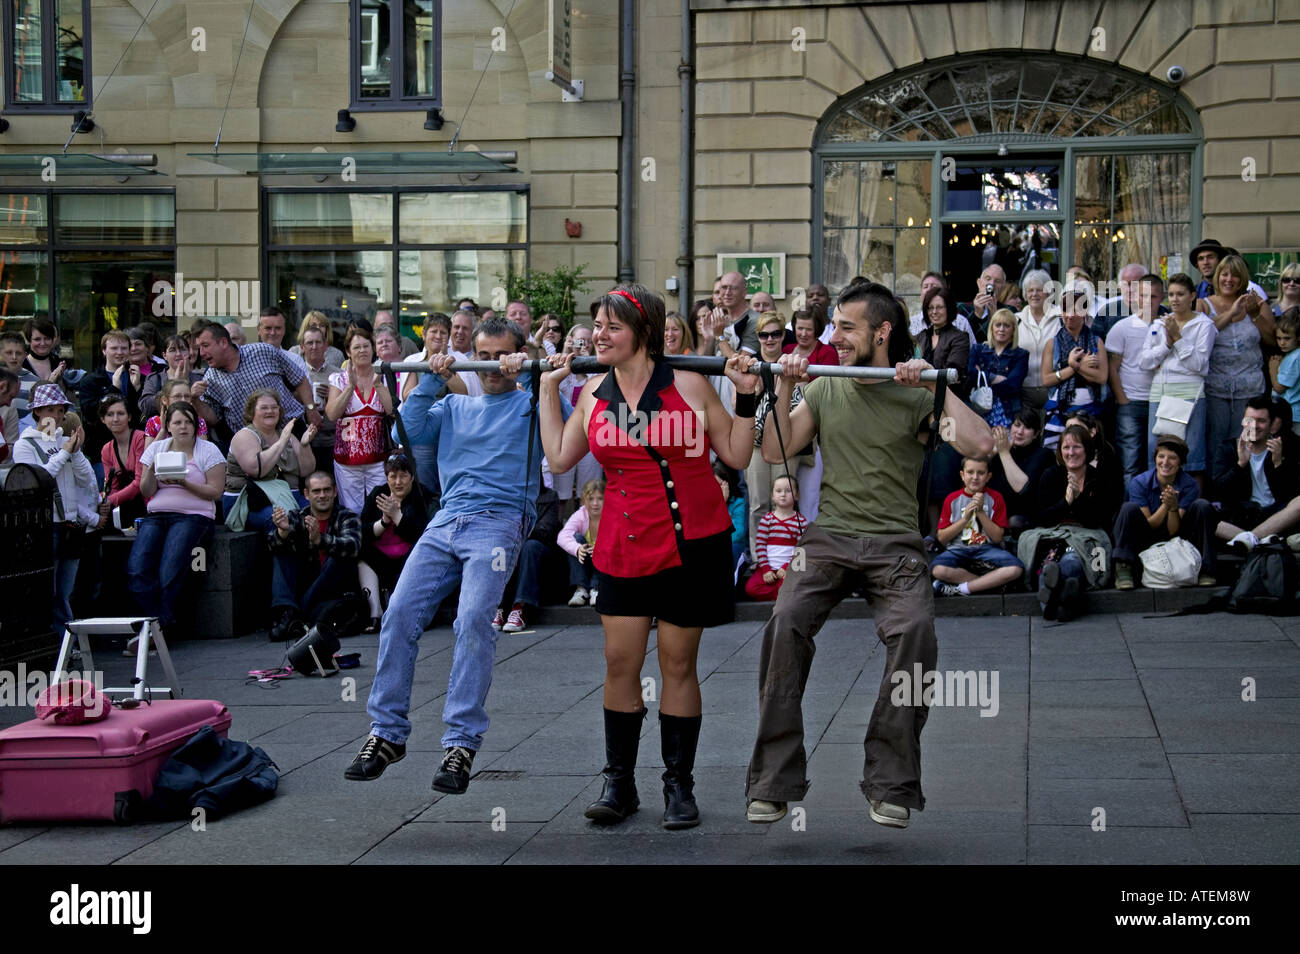 Starke Frau heben zwei Männer auf der horizontalen Pole, Edinburgh Fringe Festival, Schottland, Vereinigtes Königreich, Europa Stockfoto